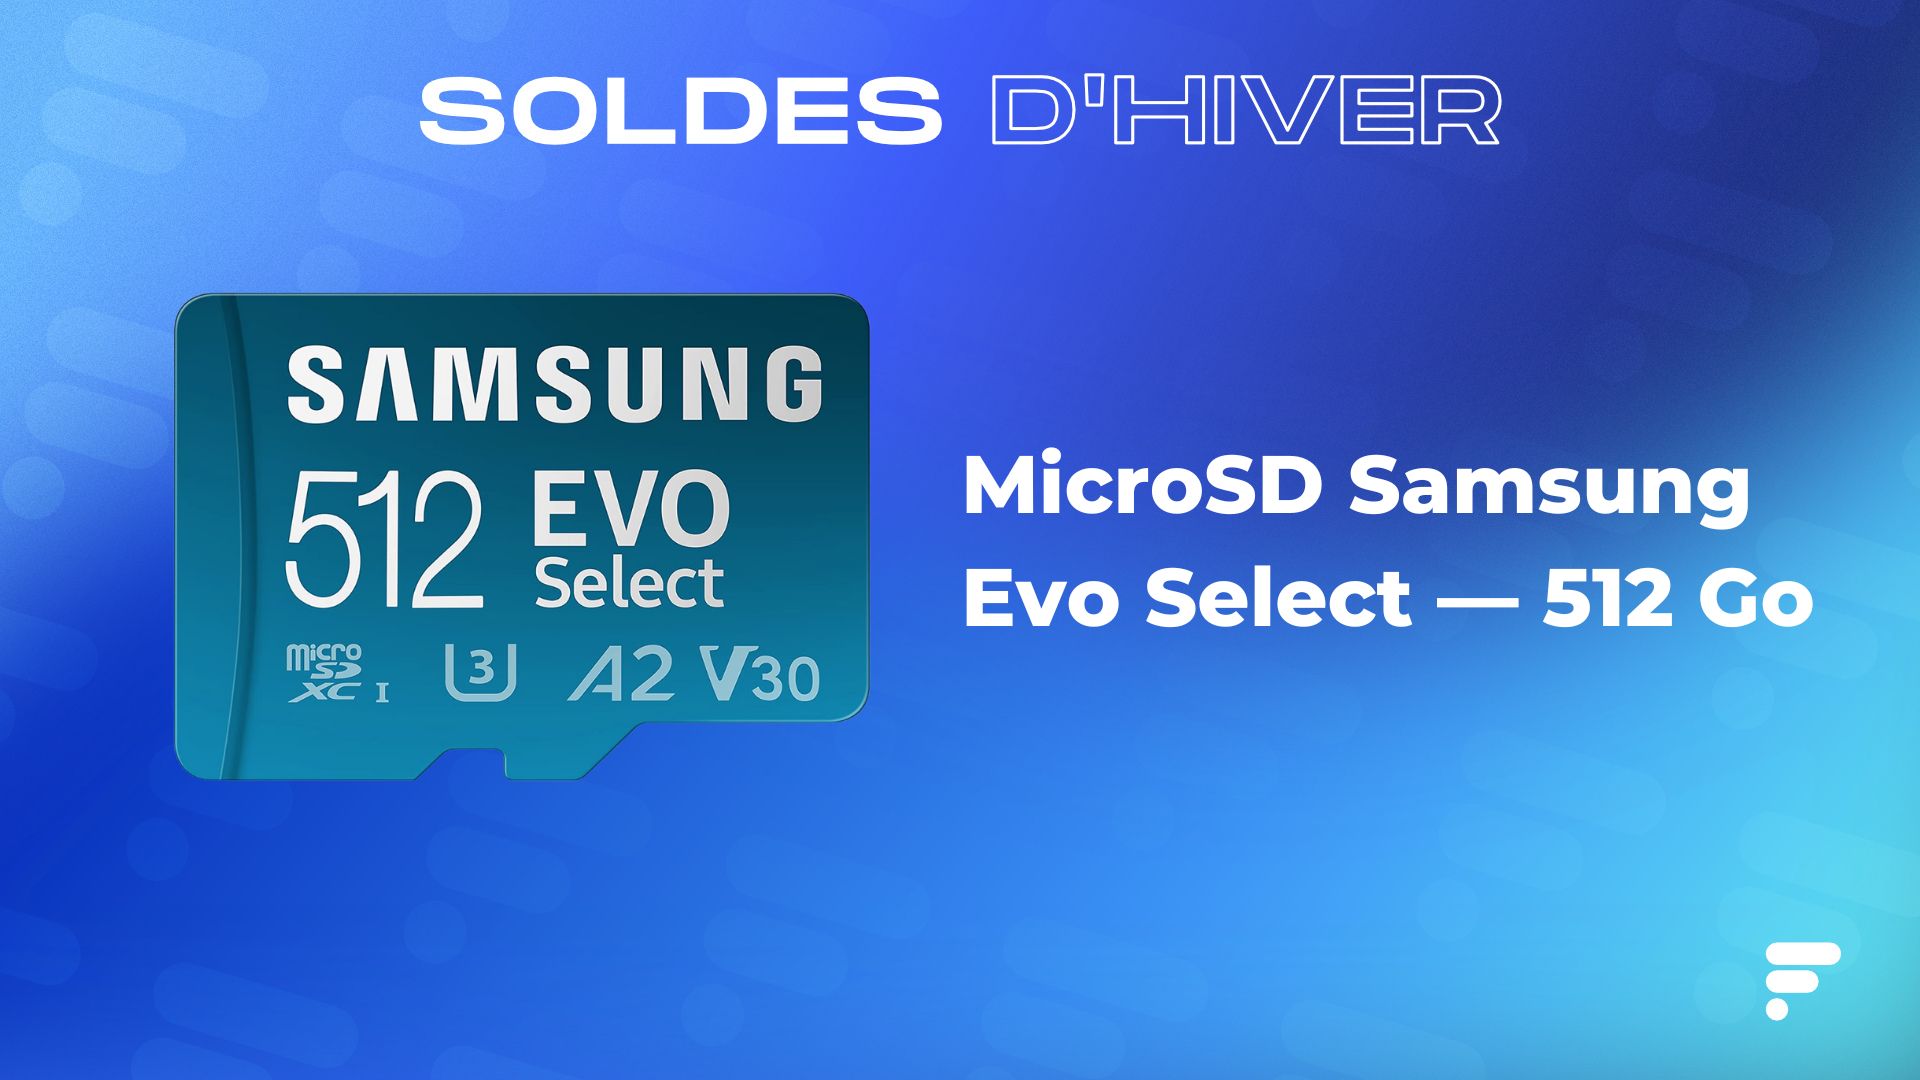 Ce SSD Samsung avec une énorme capacité (4 To) est à -49 % grâce aux soldes  d'été